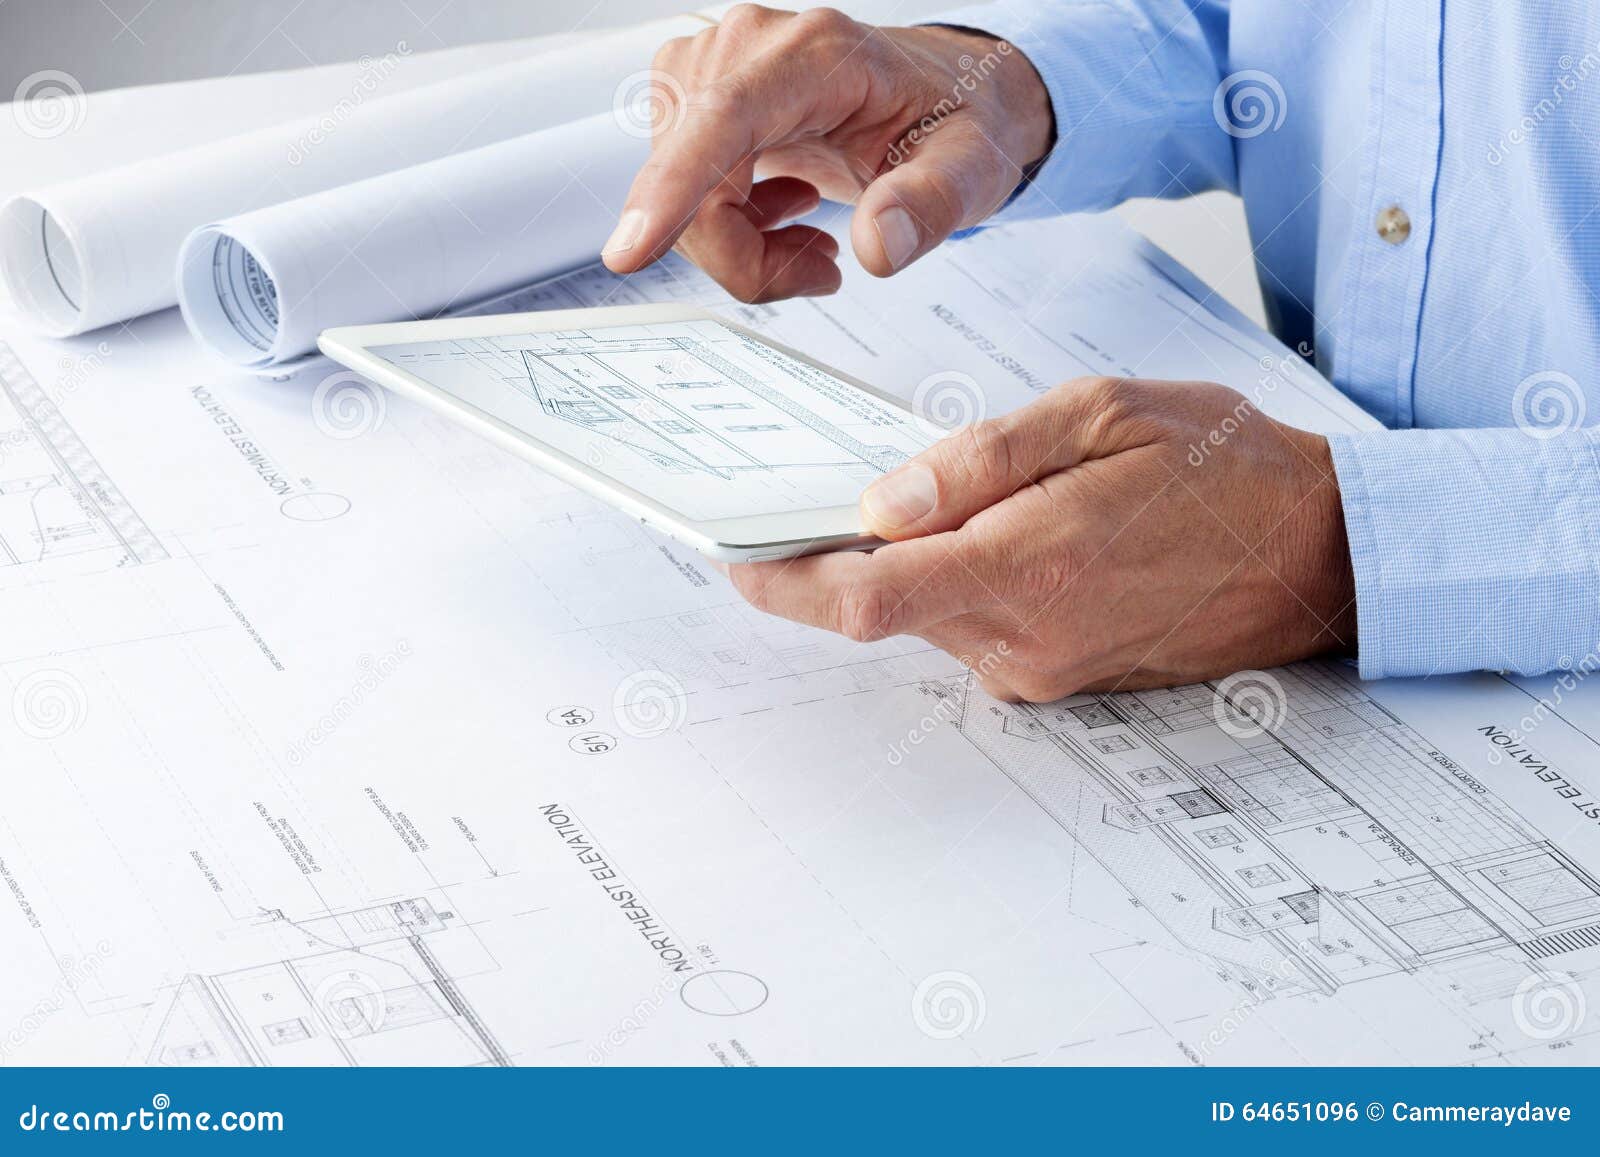 architect tablet business plans architecture desk